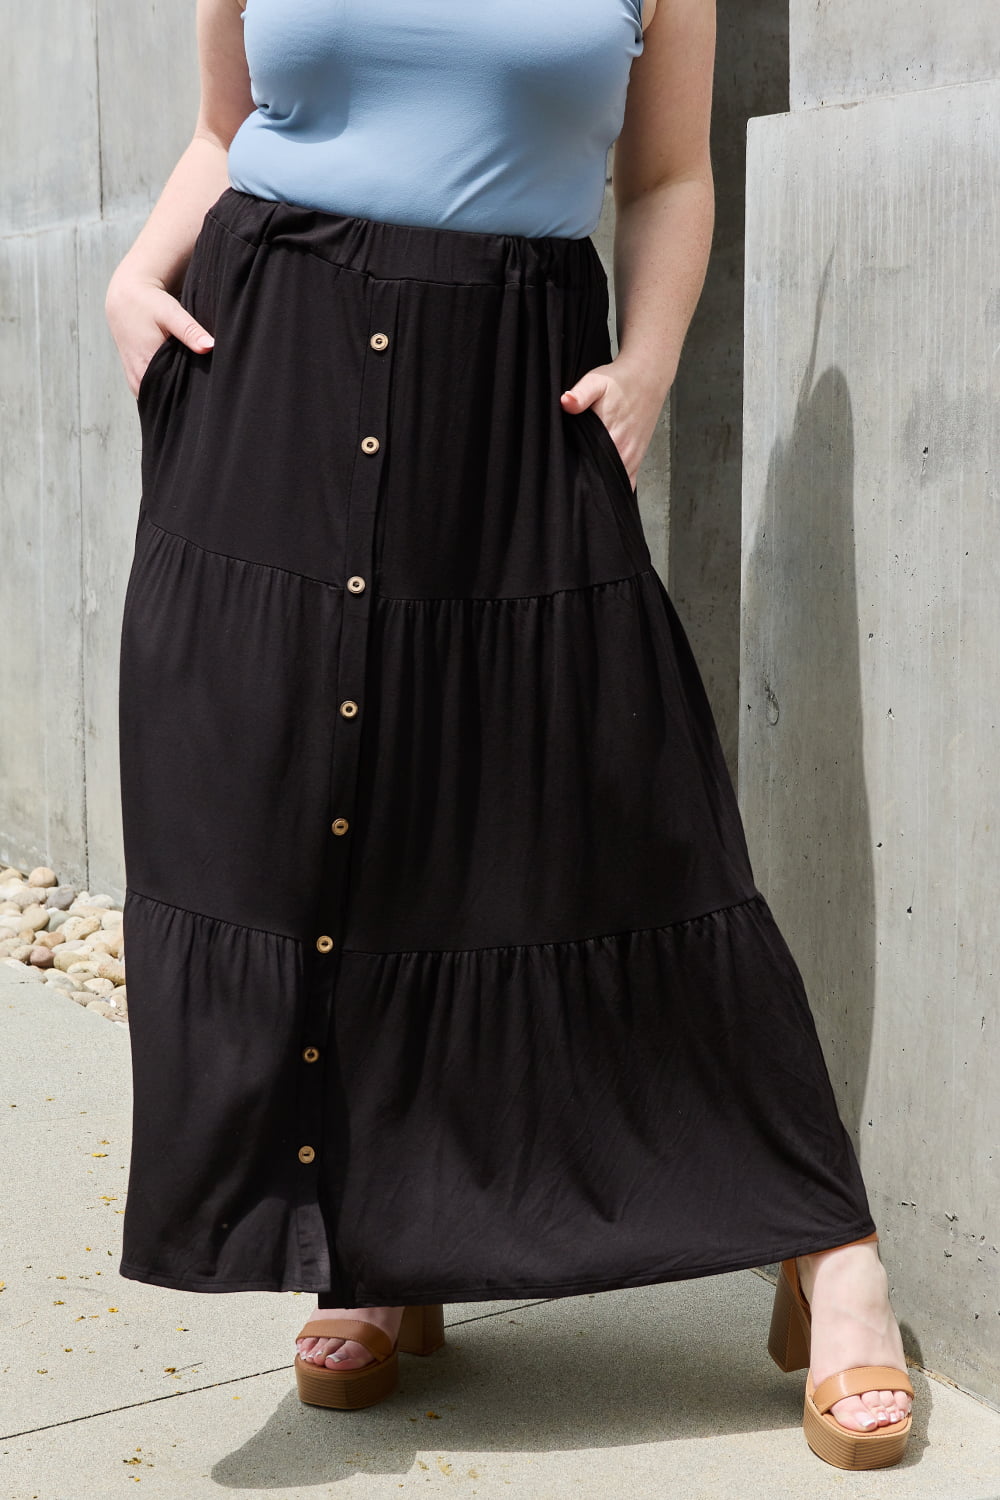 So Easy Full Size Solid Maxi Skirt - Black / S - Bottoms - Skirts - 1 - 2024